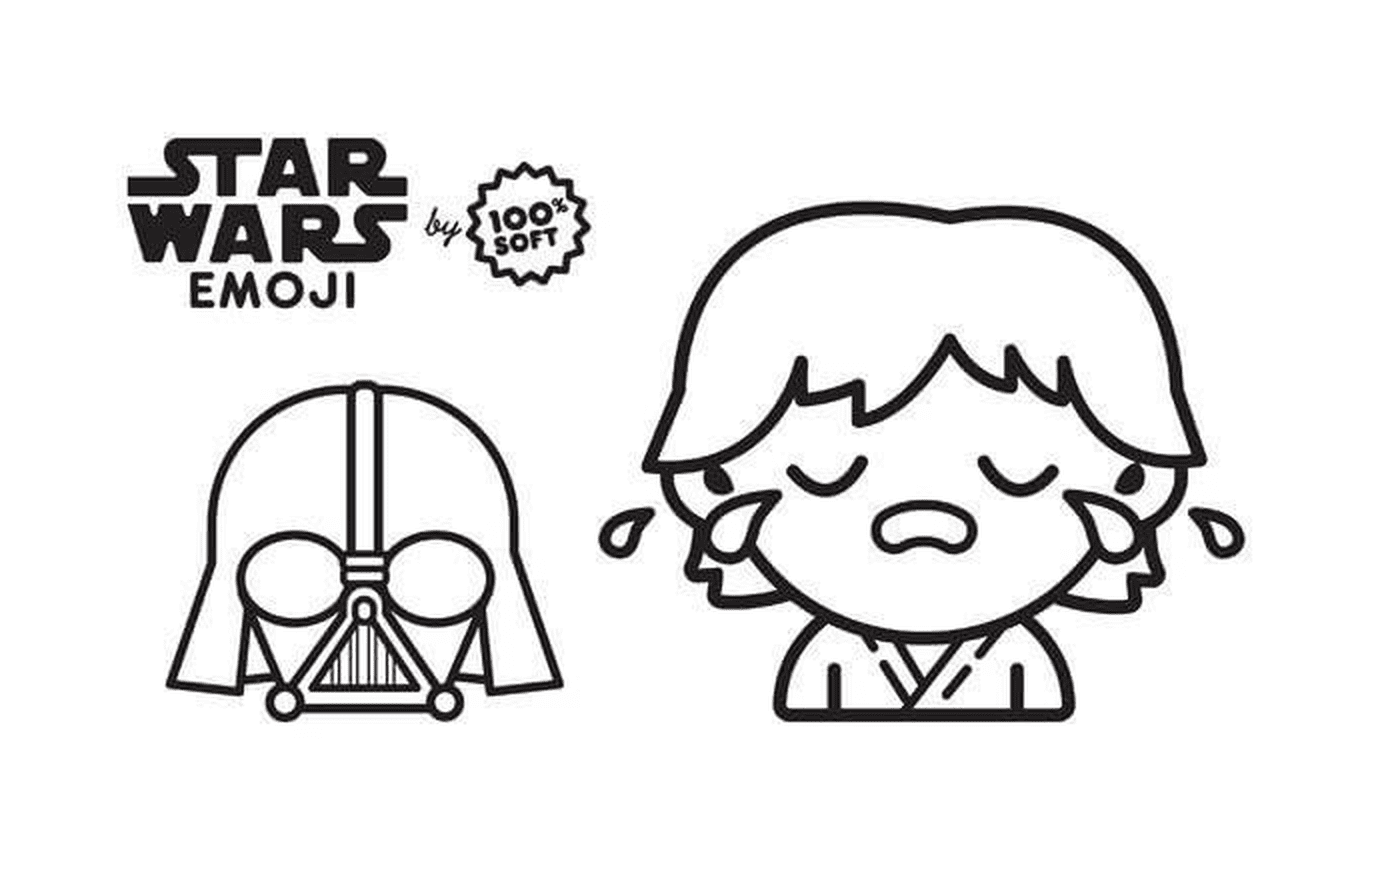  Emoji Star Wars, Vater und Sohn 